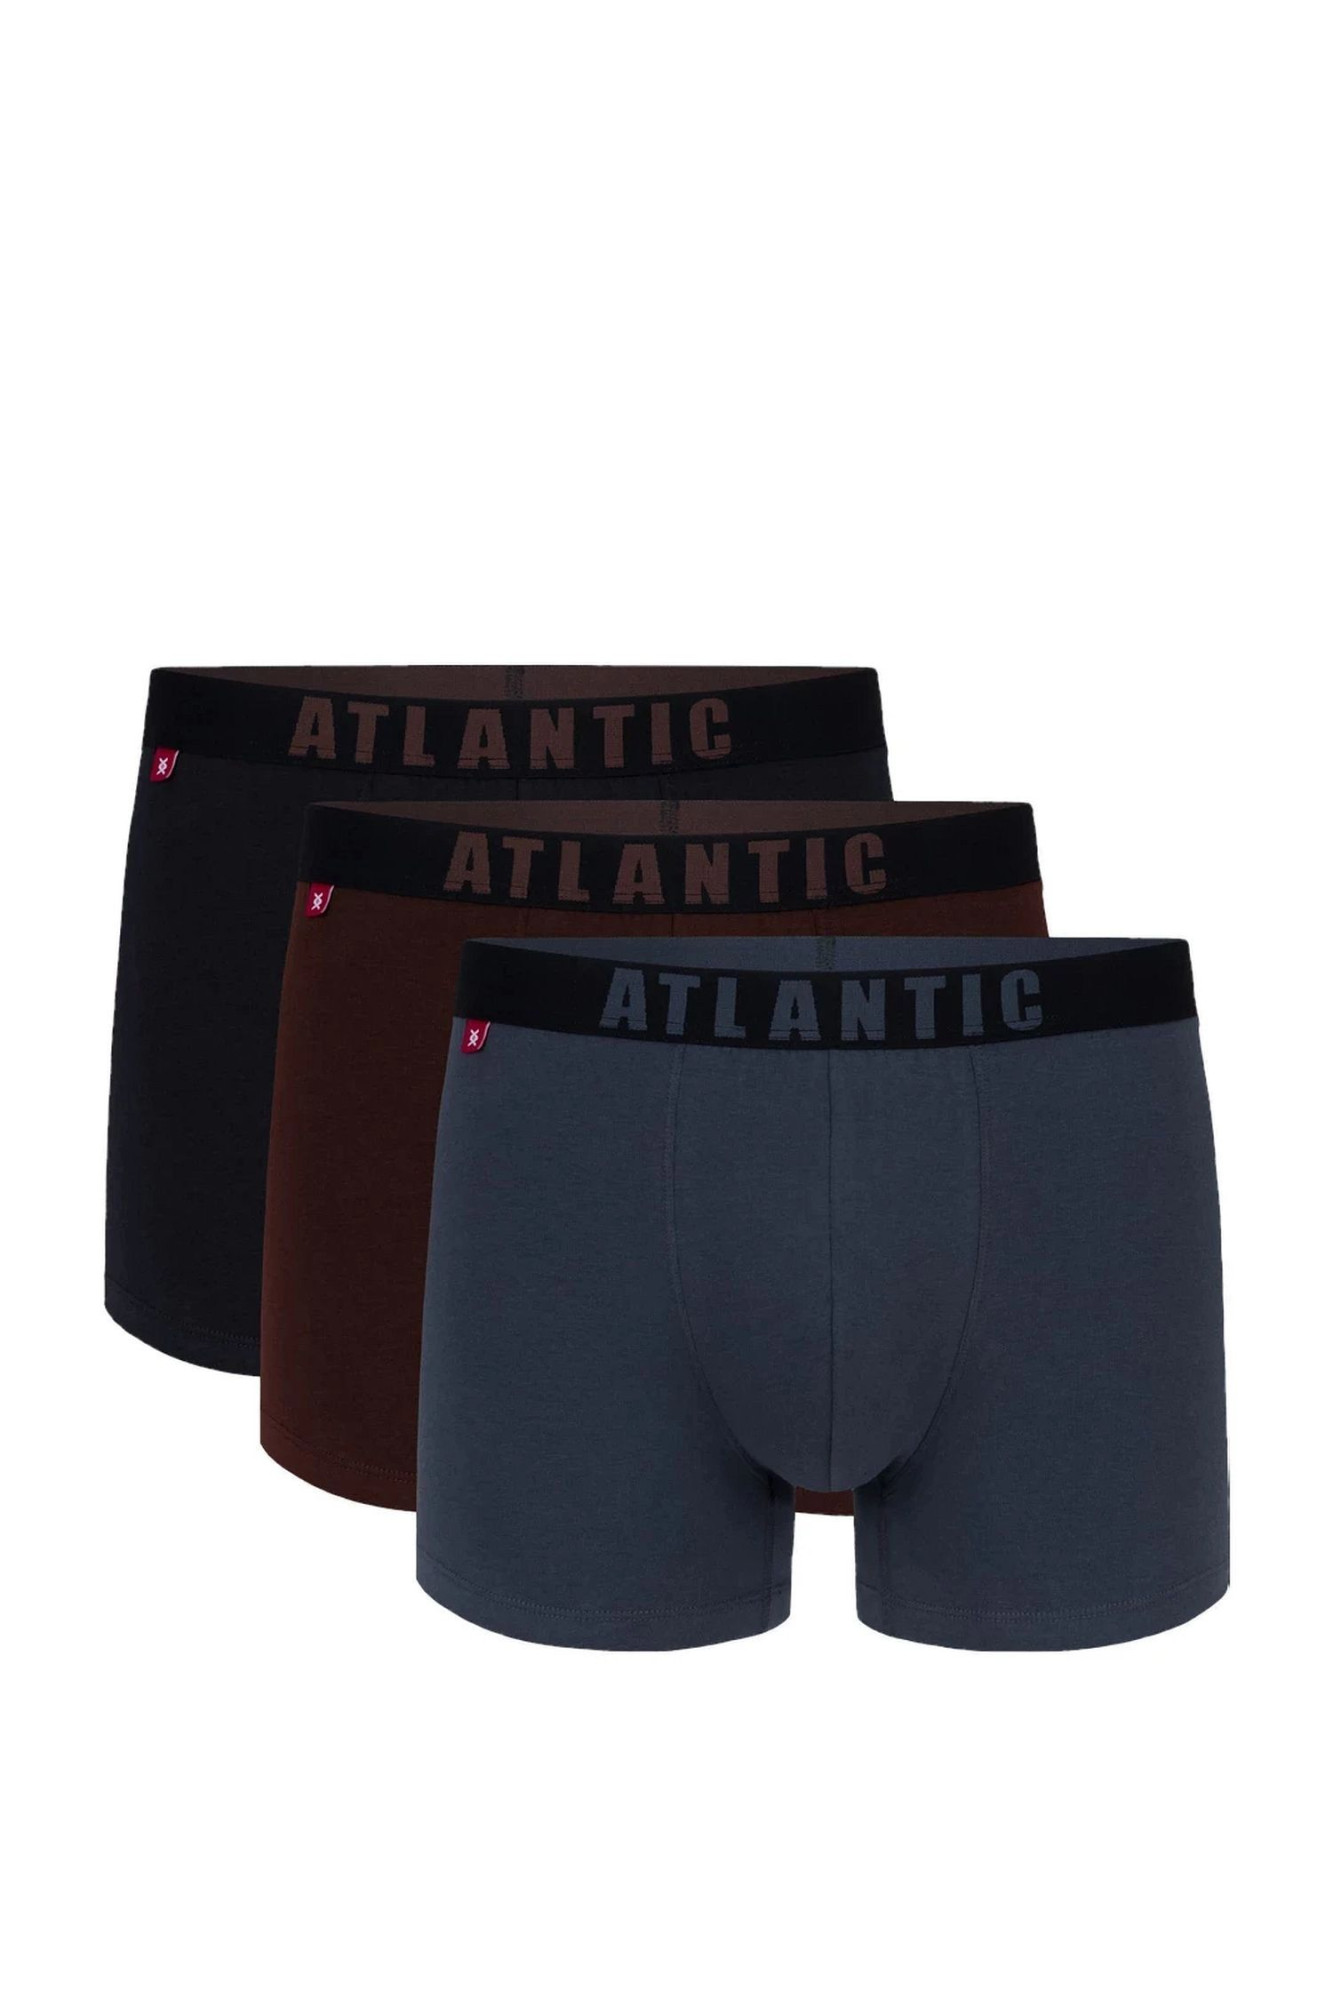 Pánské boxerky 3 pack 011/02 - Atlantic vícebarevná XXL